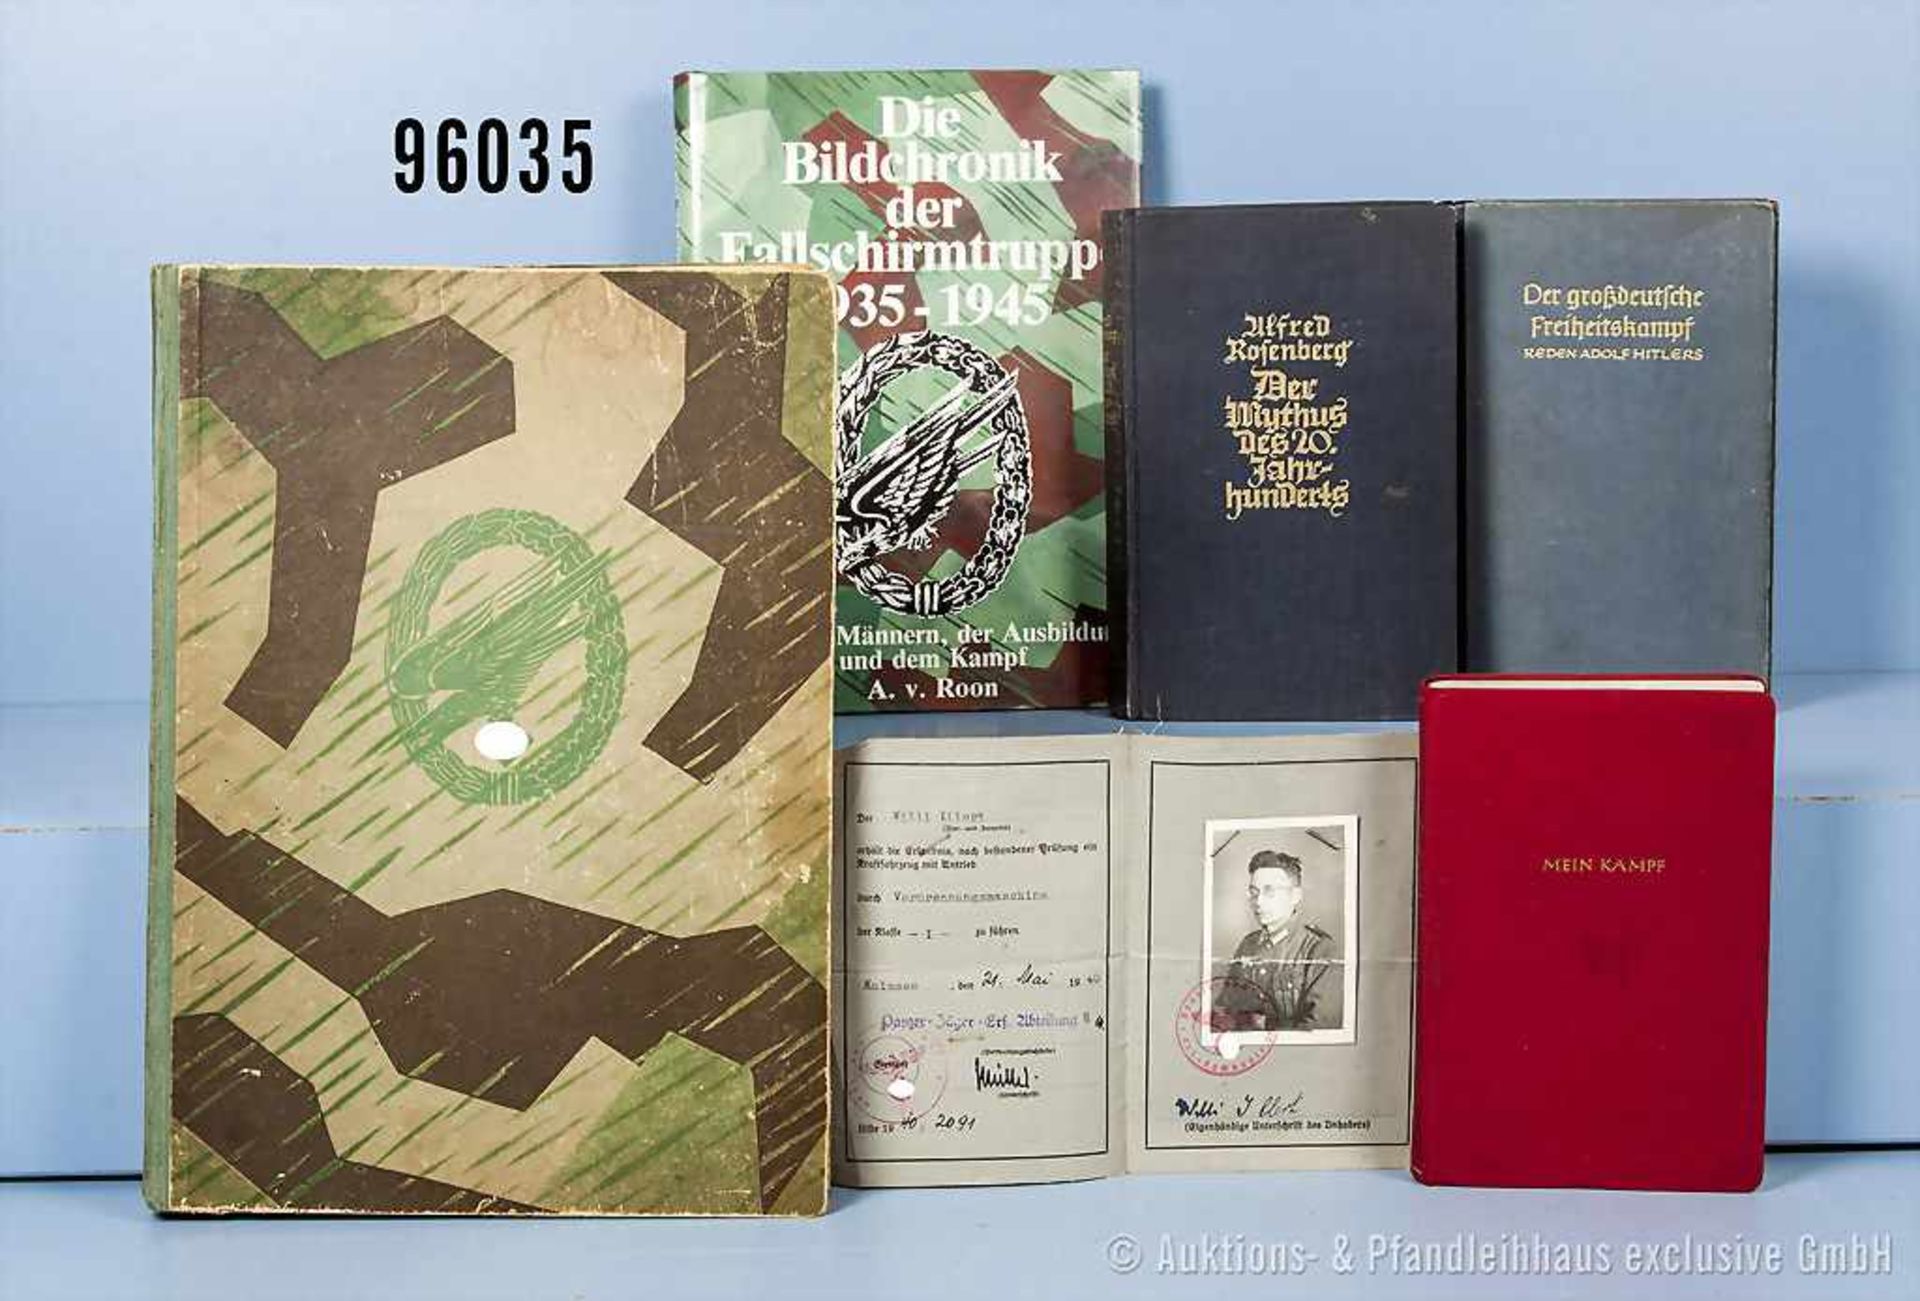 Konv. 5 Bücher, Adolf Hitler "Mein Kampf", rote Leinenausgabe von 1940, "Der Mythus des 20.